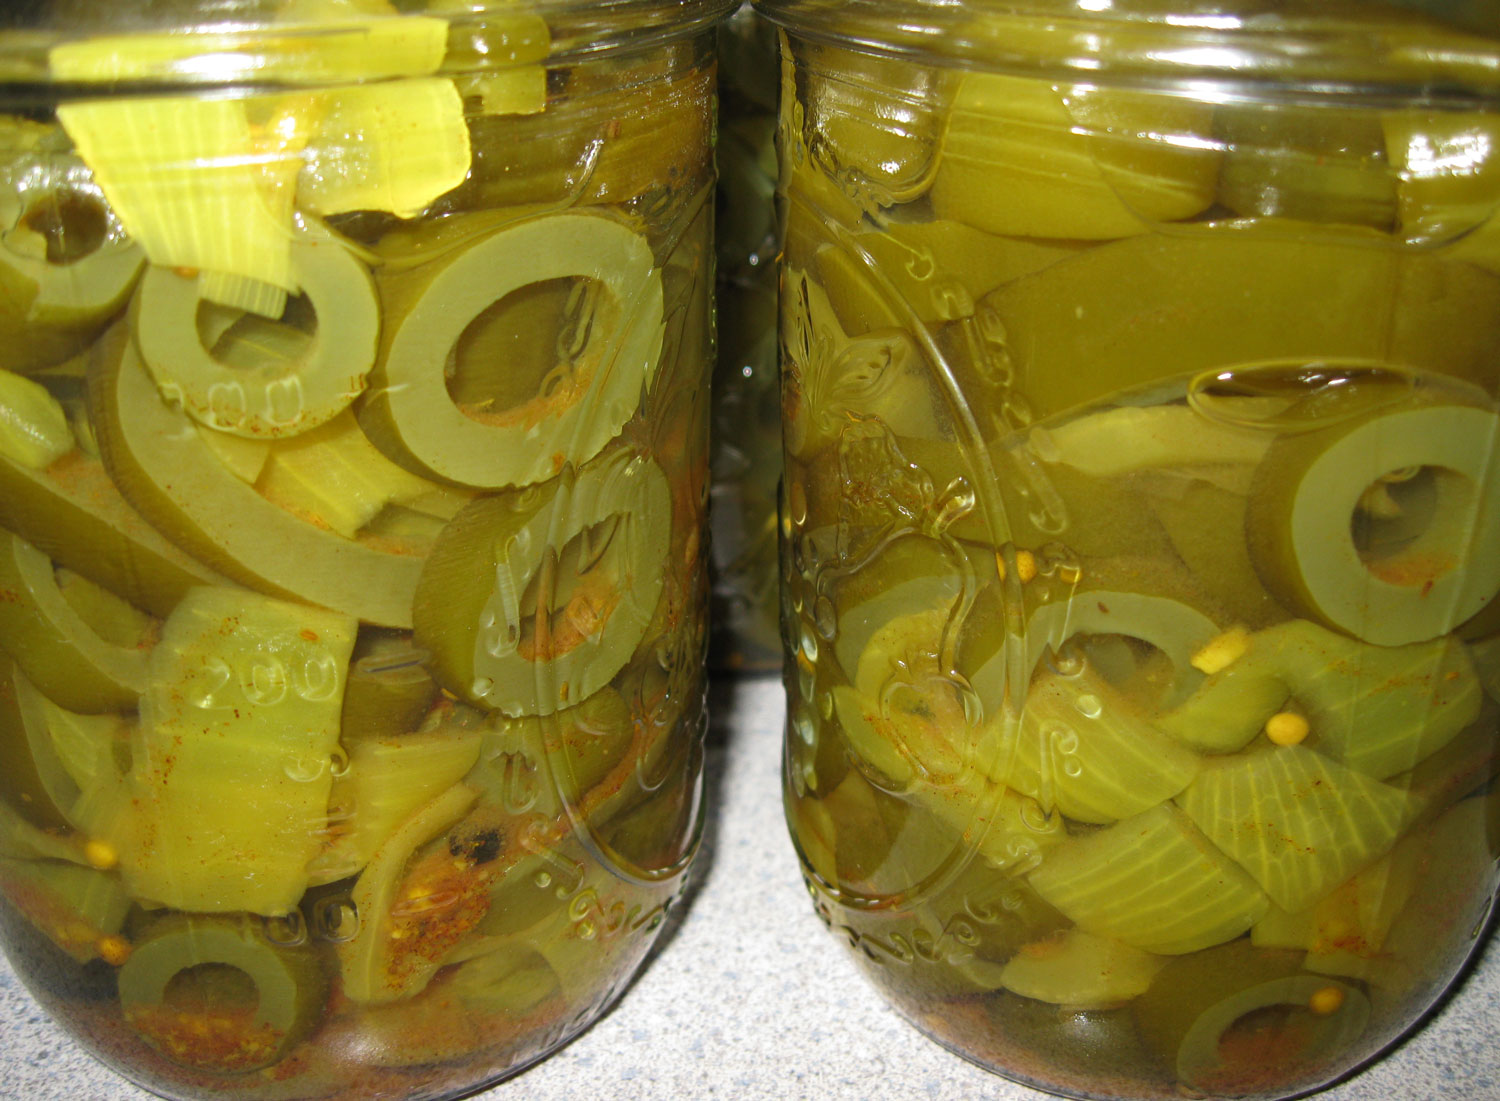 Kelpy-O pickles